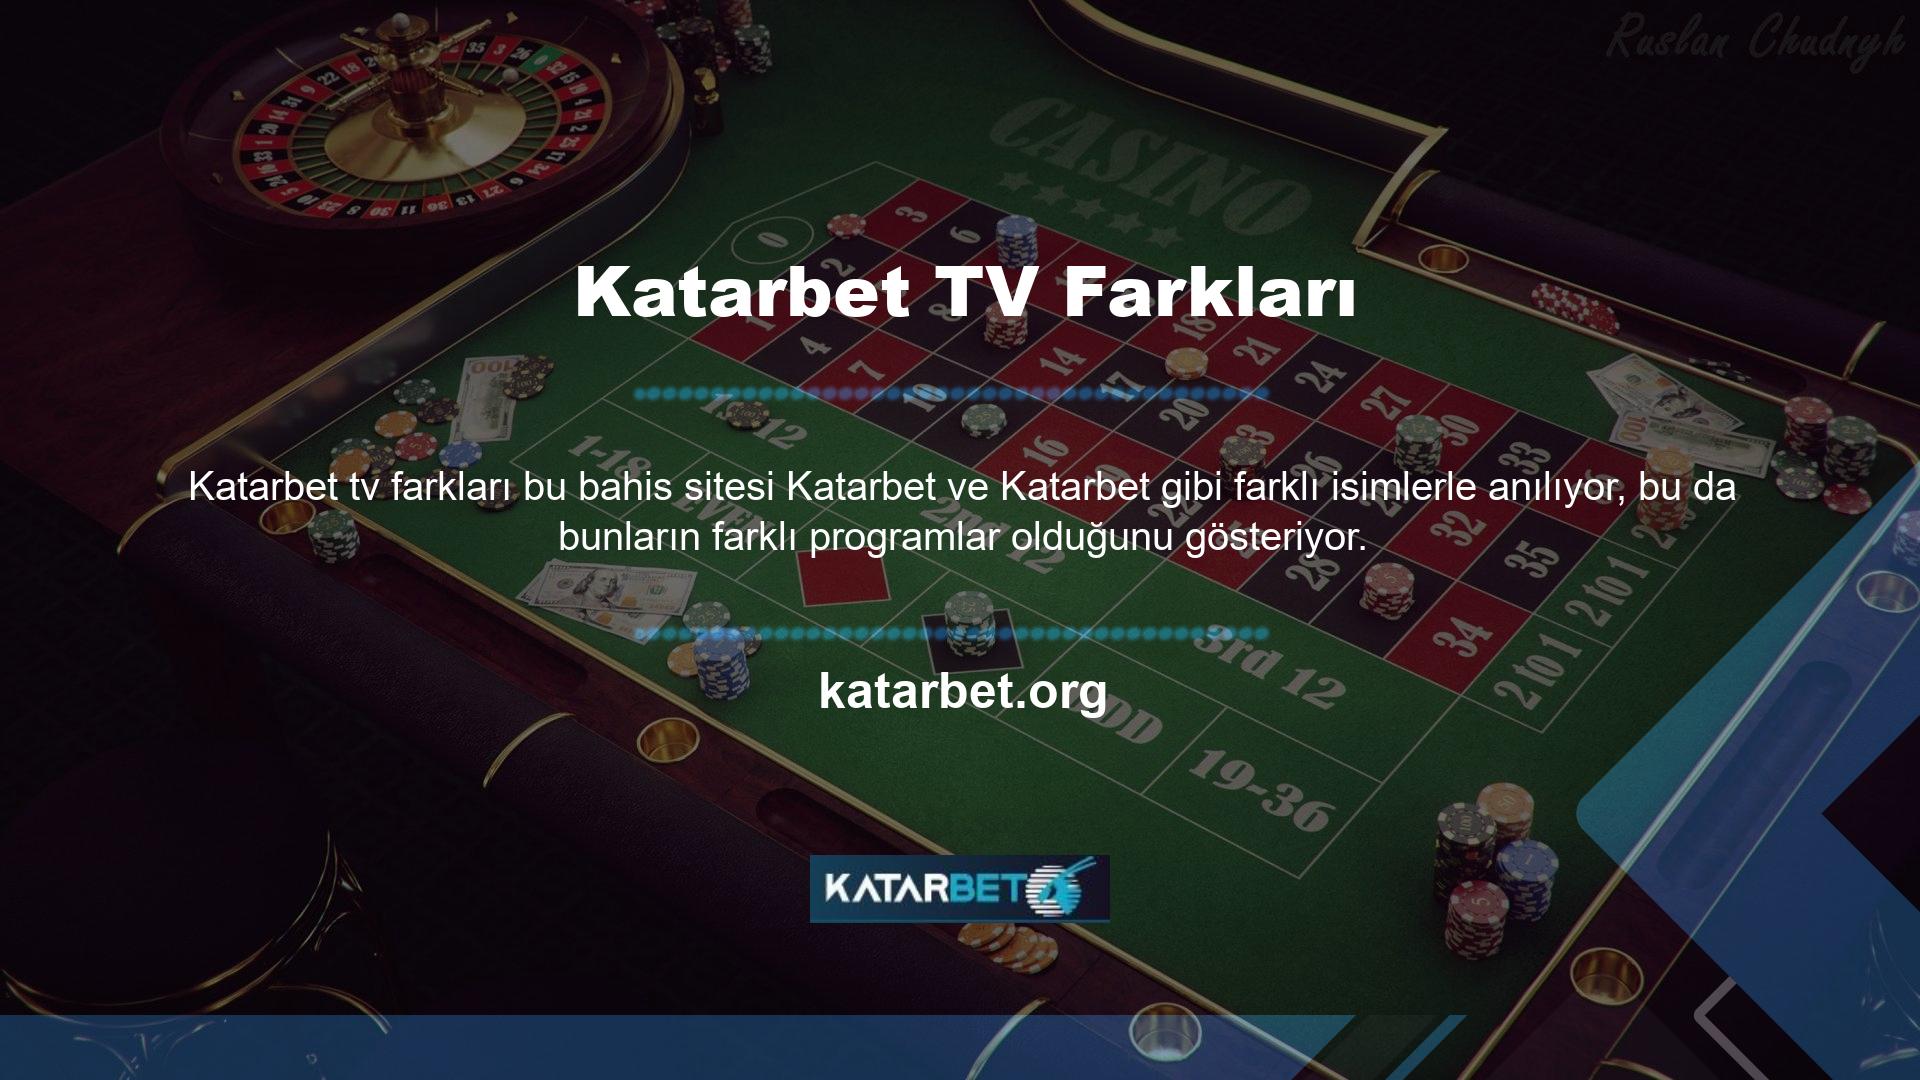 Katarbet Live, Katarbet TV HD' nin canlı oyun hizmetinin kapısını açan ikinci isimdir